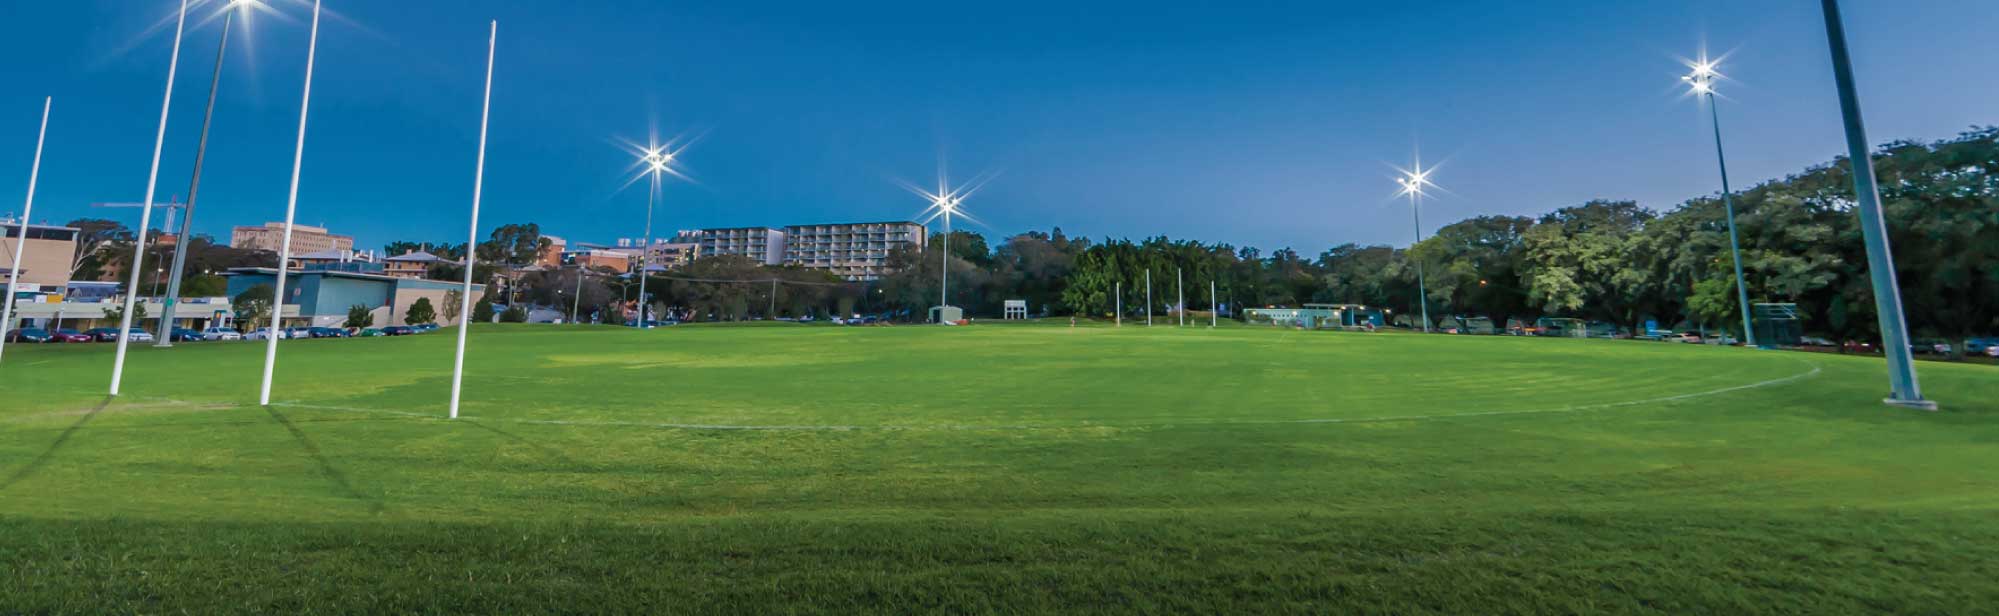 The university of Queensland AFL LED light